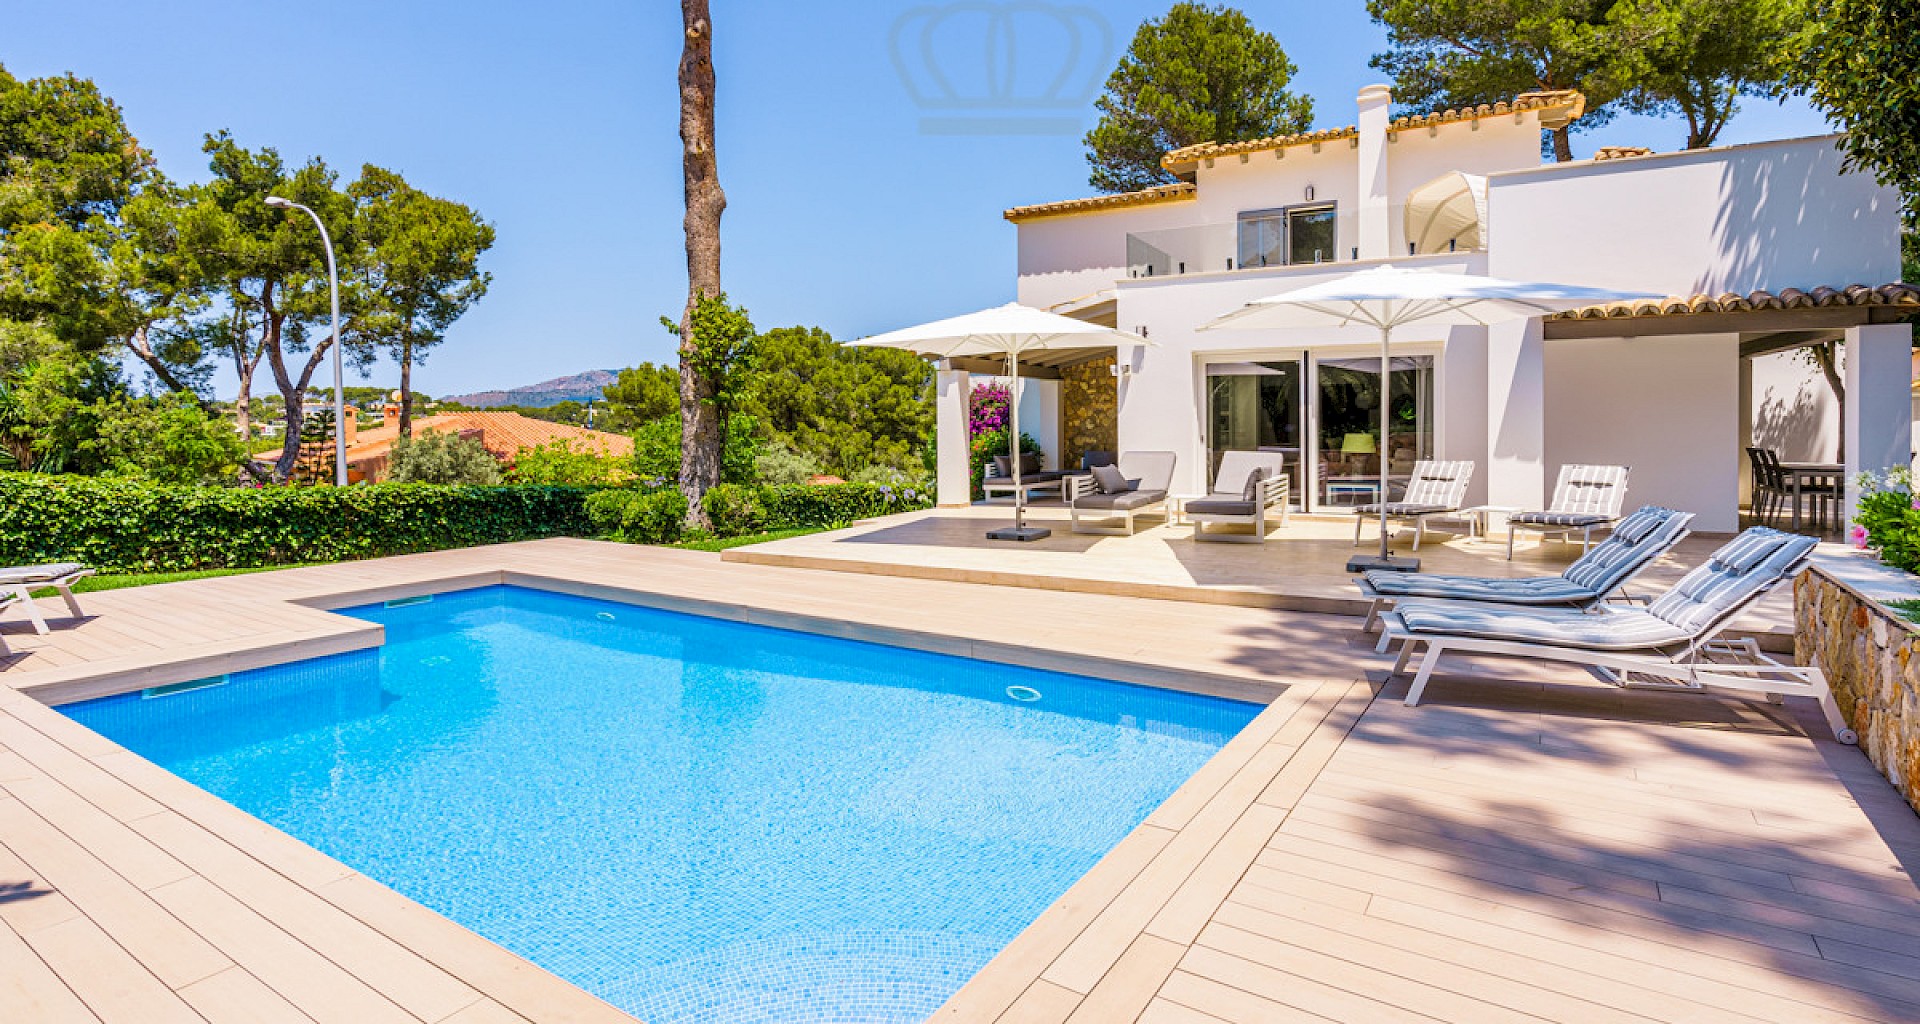 KROHN & LUEDEMANN Luxury family villa in Santa Ponsa with pool and garden Villa in Santa Ponsa mit Pool und Garten 26